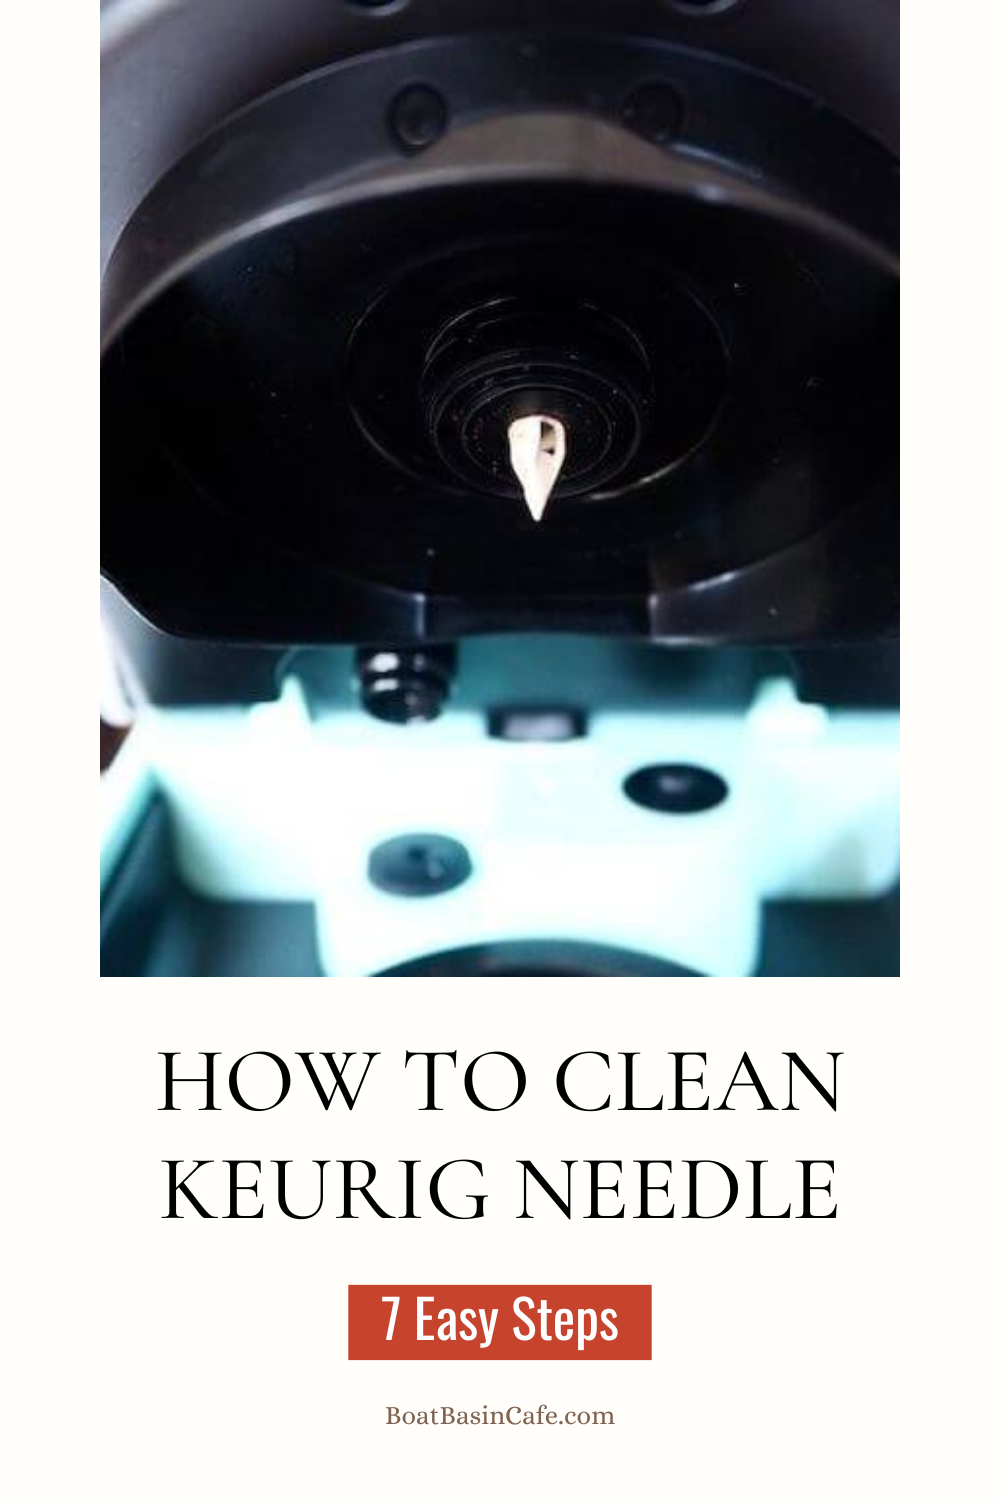 How to Clean Keurig Needle in 7 Easy Steps!